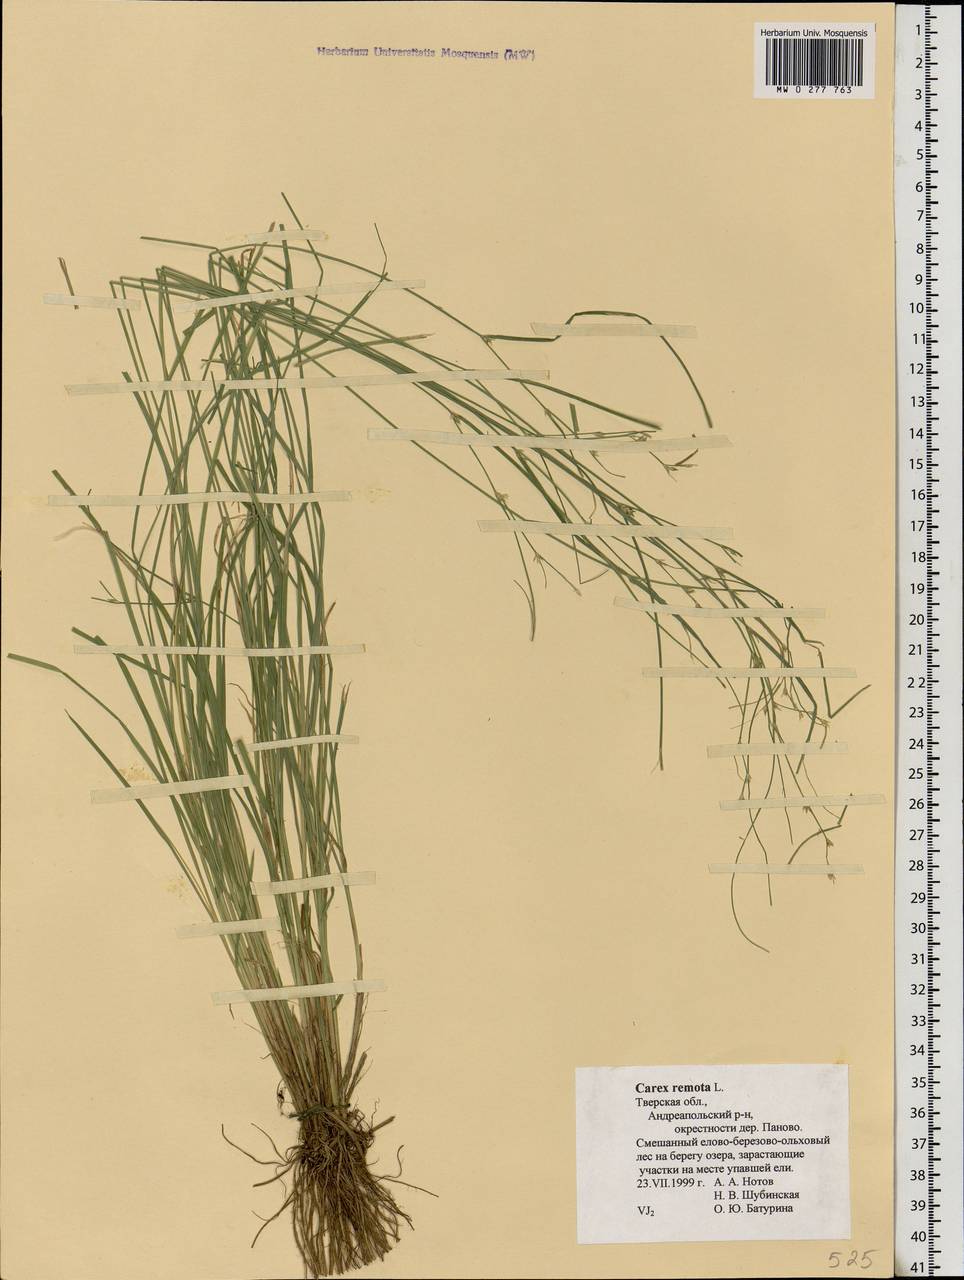 Carex remota L., Eastern Europe, North-Western region (E2) (Russia)